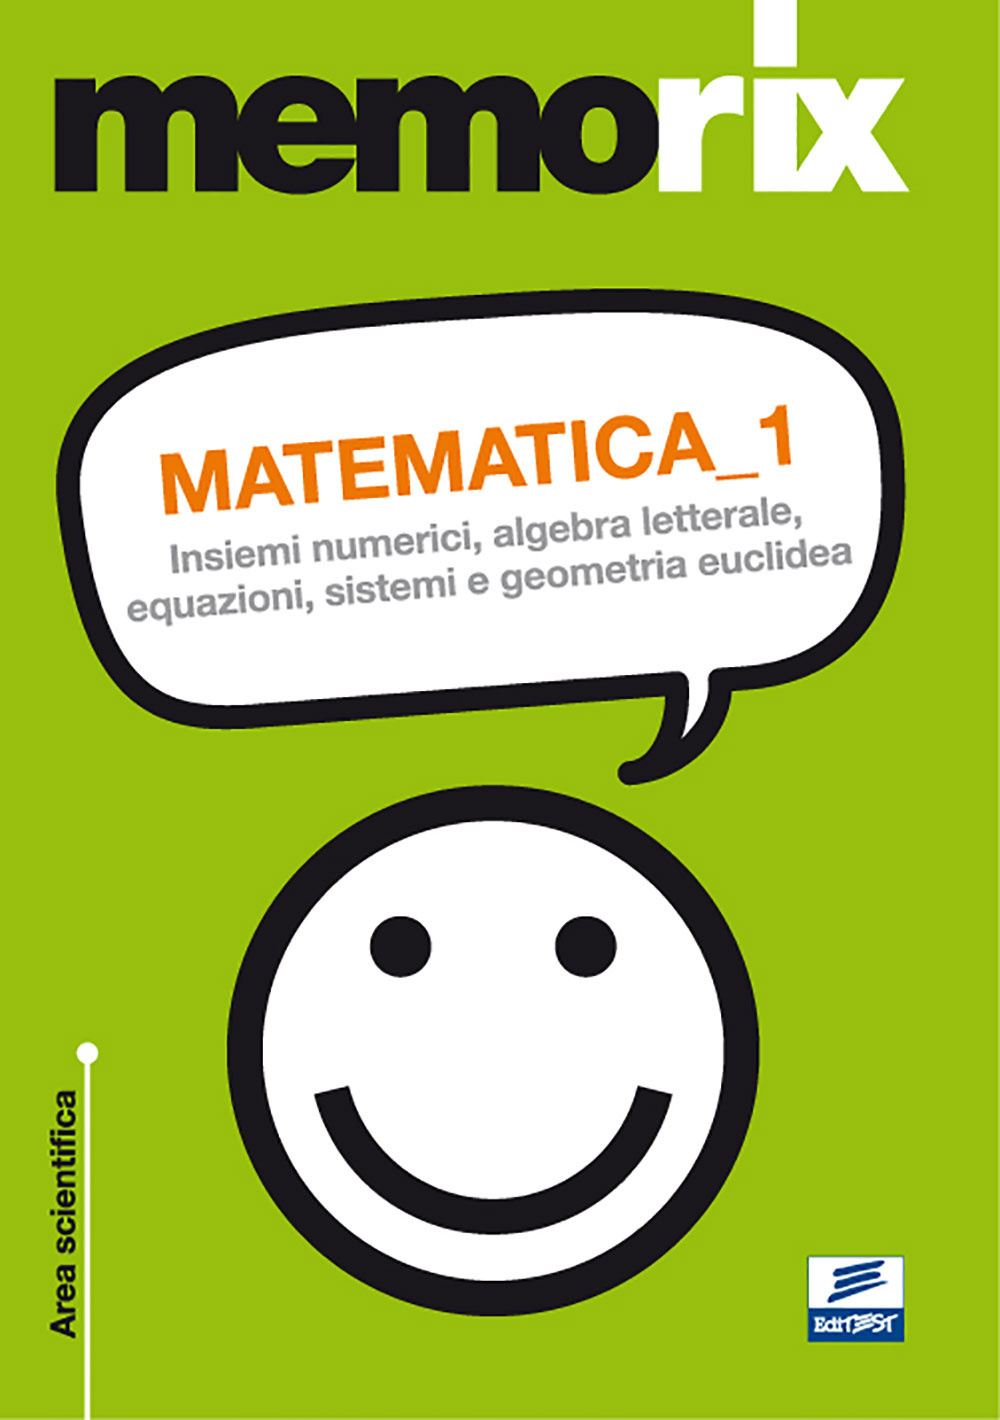 Matematica. Vol. 1: Insiemi numerici, algebra letterale, equazioni, sistemi e geometria euclidea